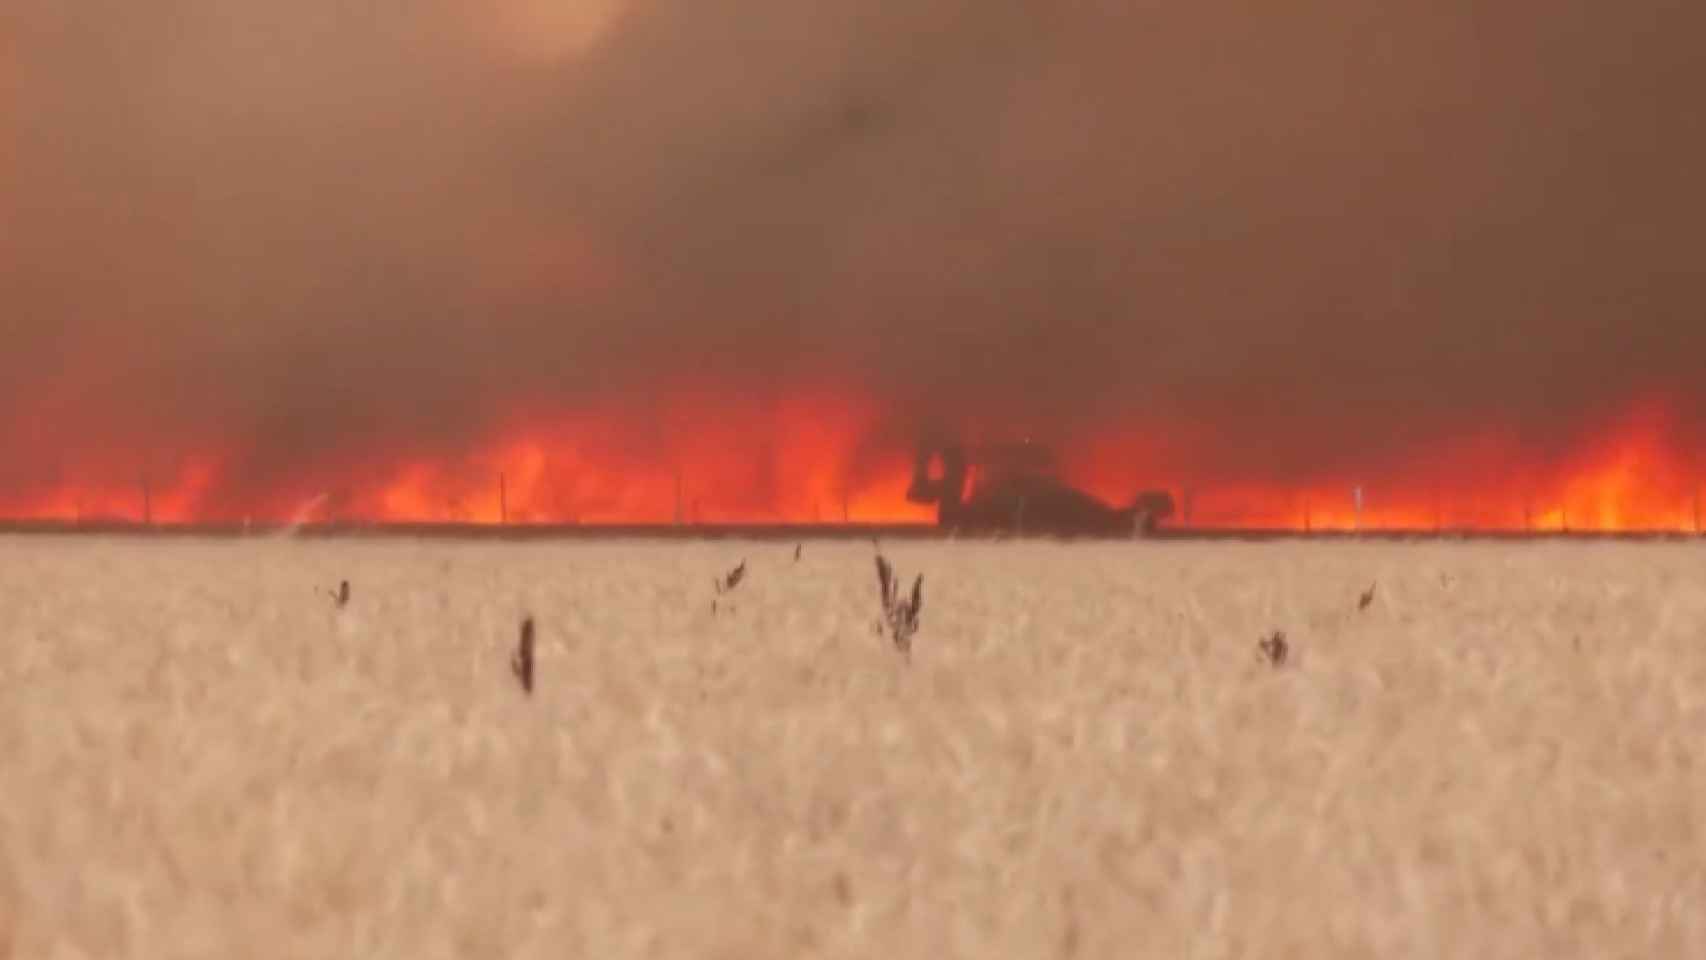 Engullido por las llamas en Tábara: el dramático vídeo del bombero que ha sido ingresado en estado crítico